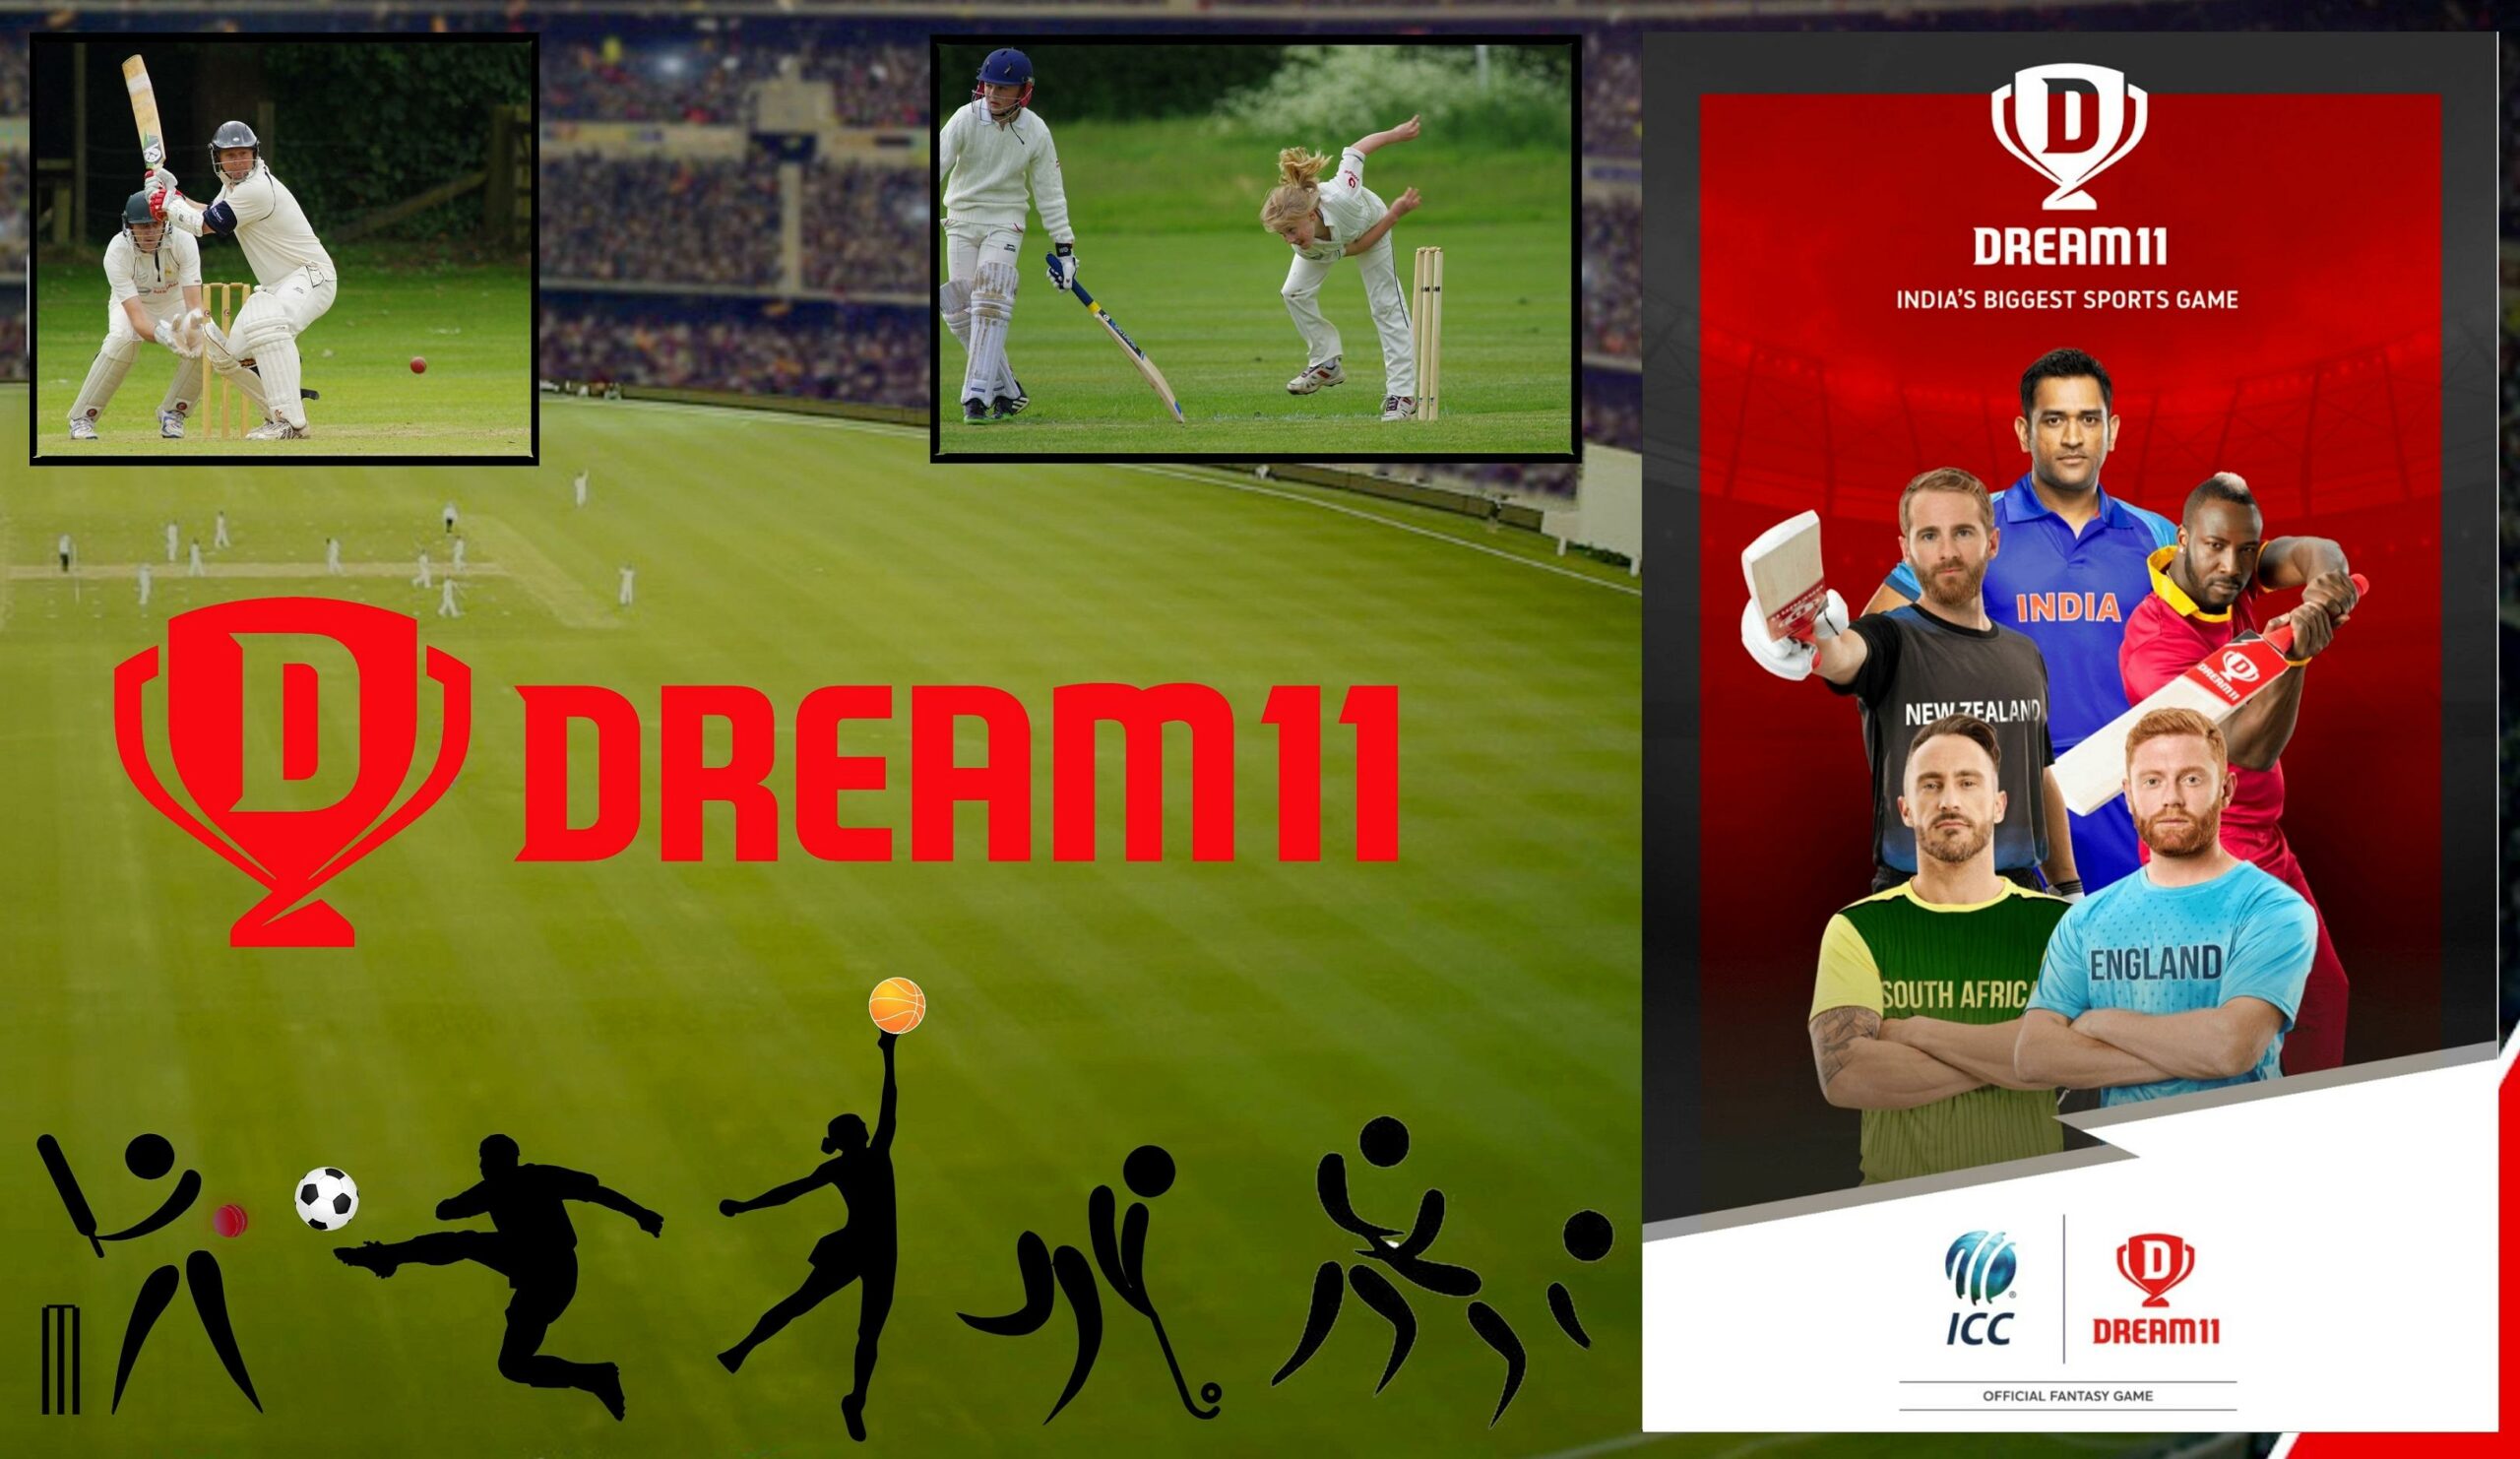 Dream11 fantasy cricket - Dream11 review